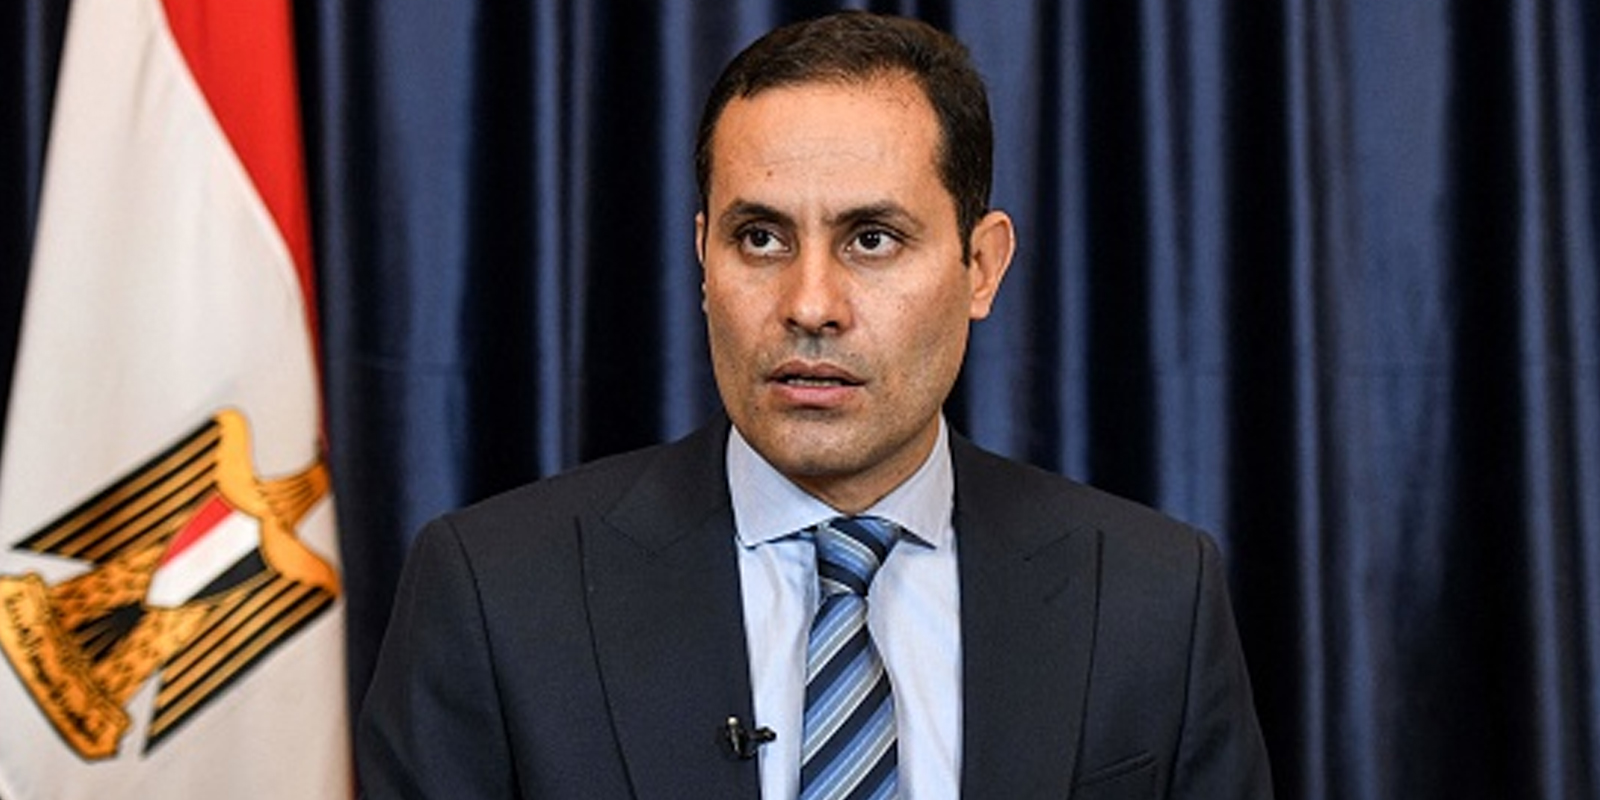 أحمد الطنطاوي يحذر من بقاء السيسي في الحكم: "سندفع ثمنه لأجيال قادمة"